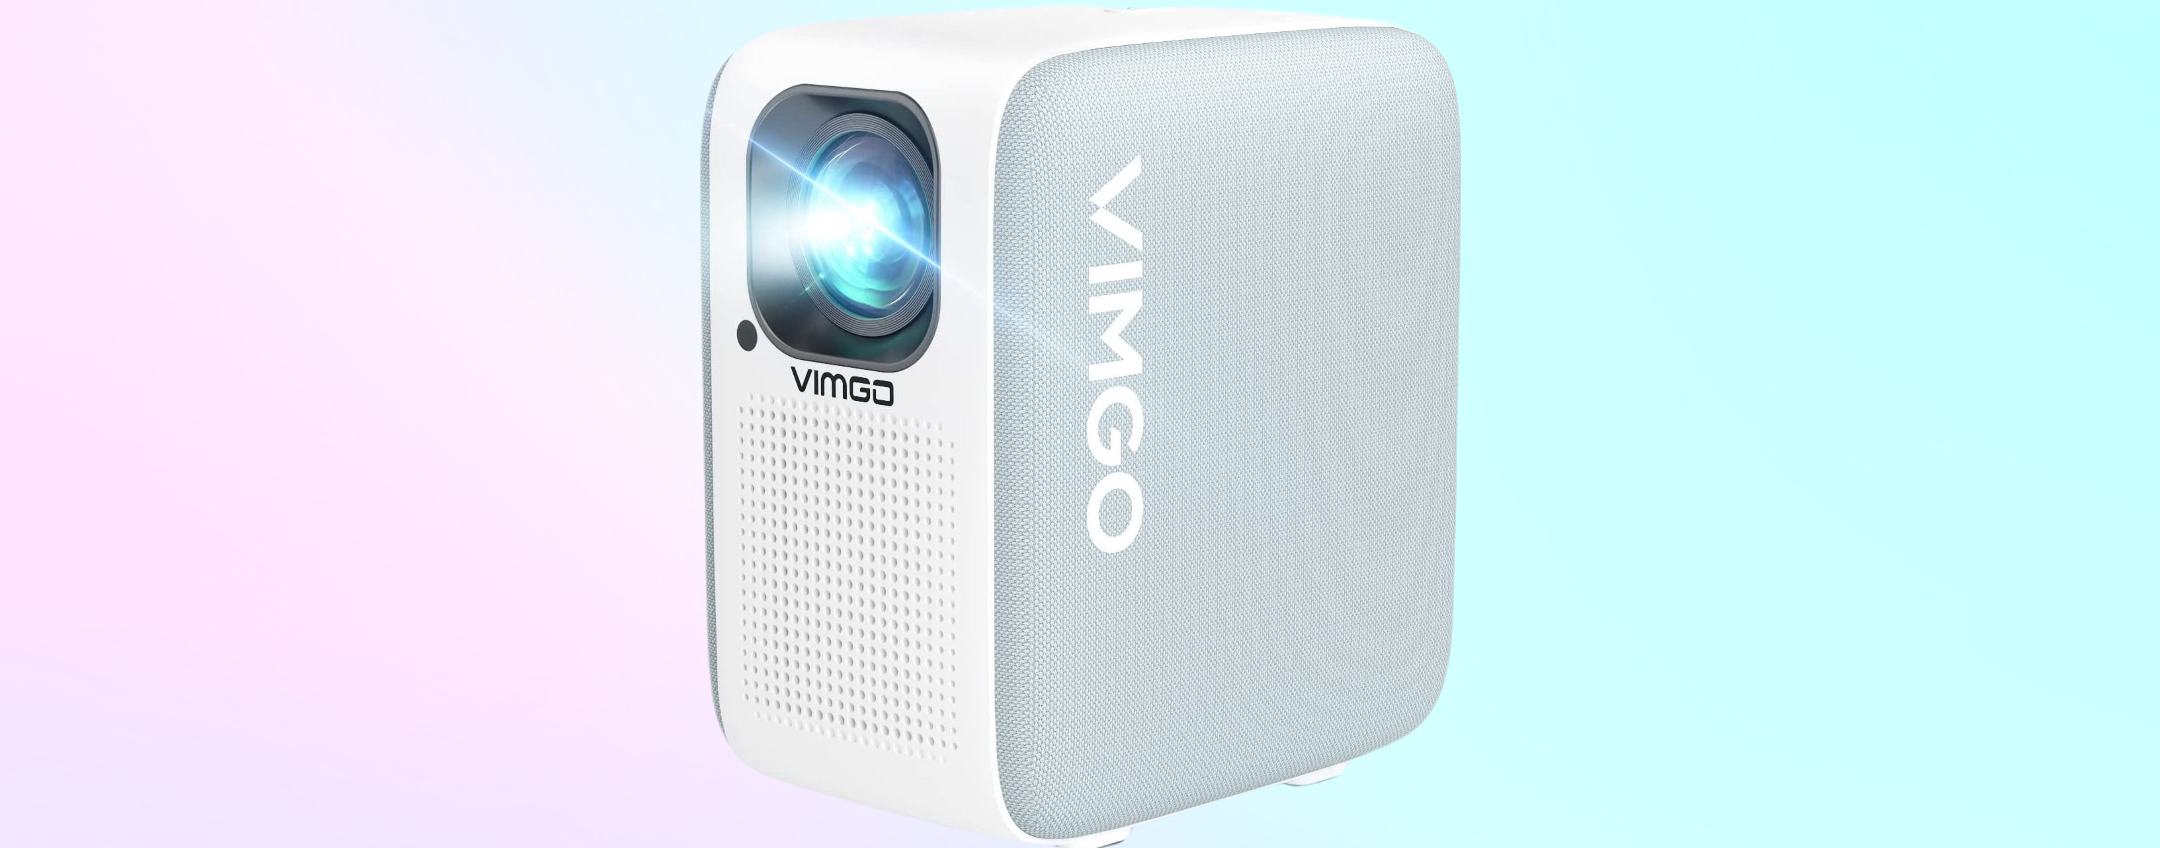 Proiettore smart VIMGO P10: massima qualità ad un OTTIMO prezzo